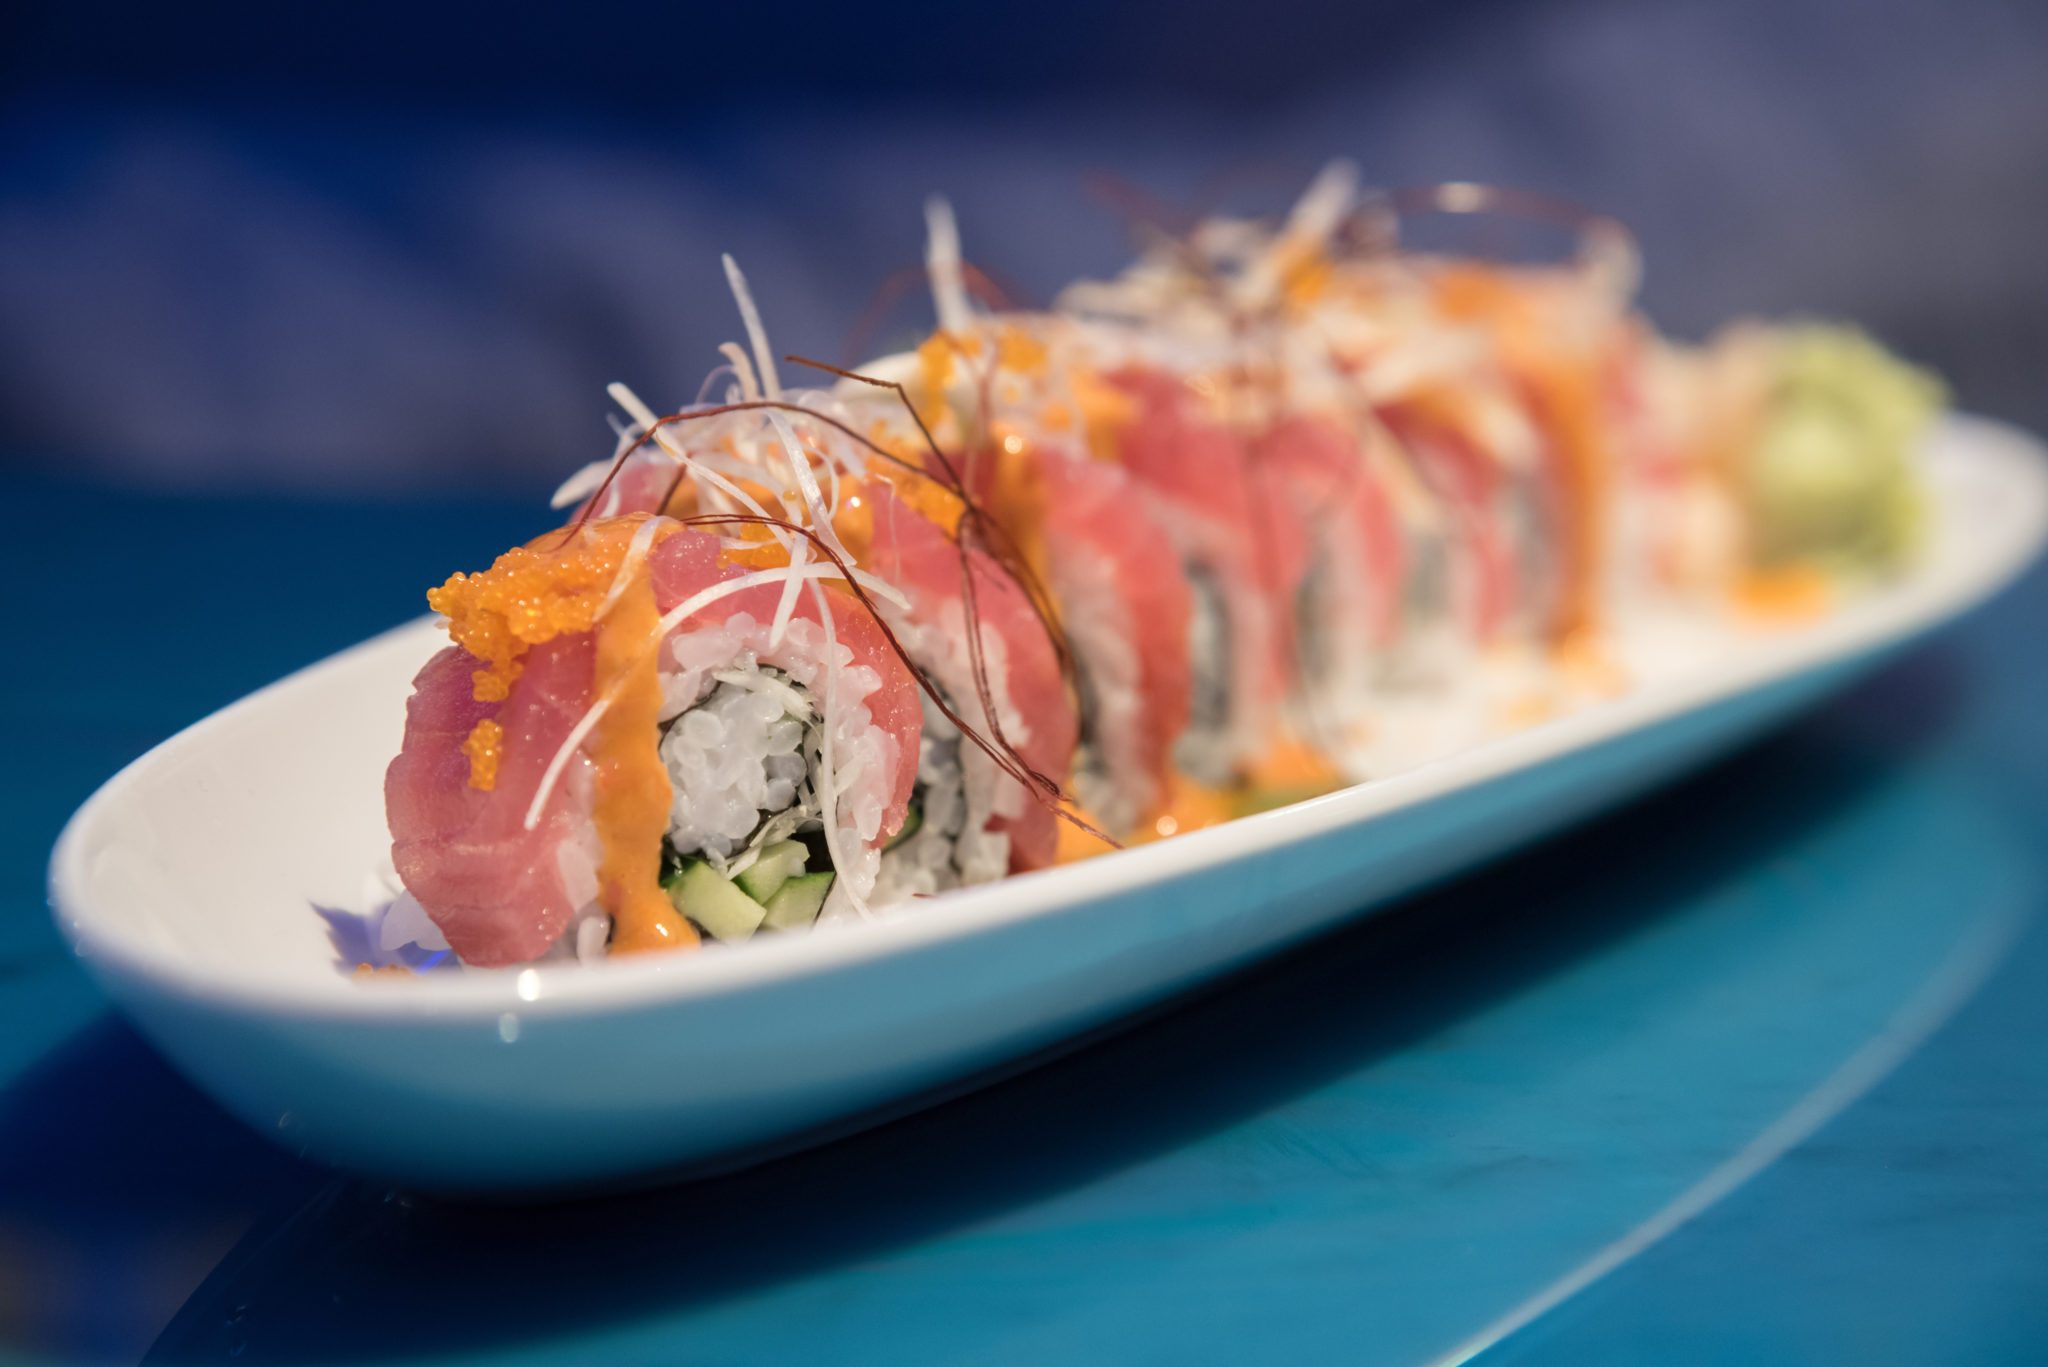 El sushi ha entrado con fuerza en la oferta gastronómica de algunos de nuestros locales. Desde los hosomakis más tradicionales hasta las últimas tendencias en sushi-fusión. Déjese sorprender!